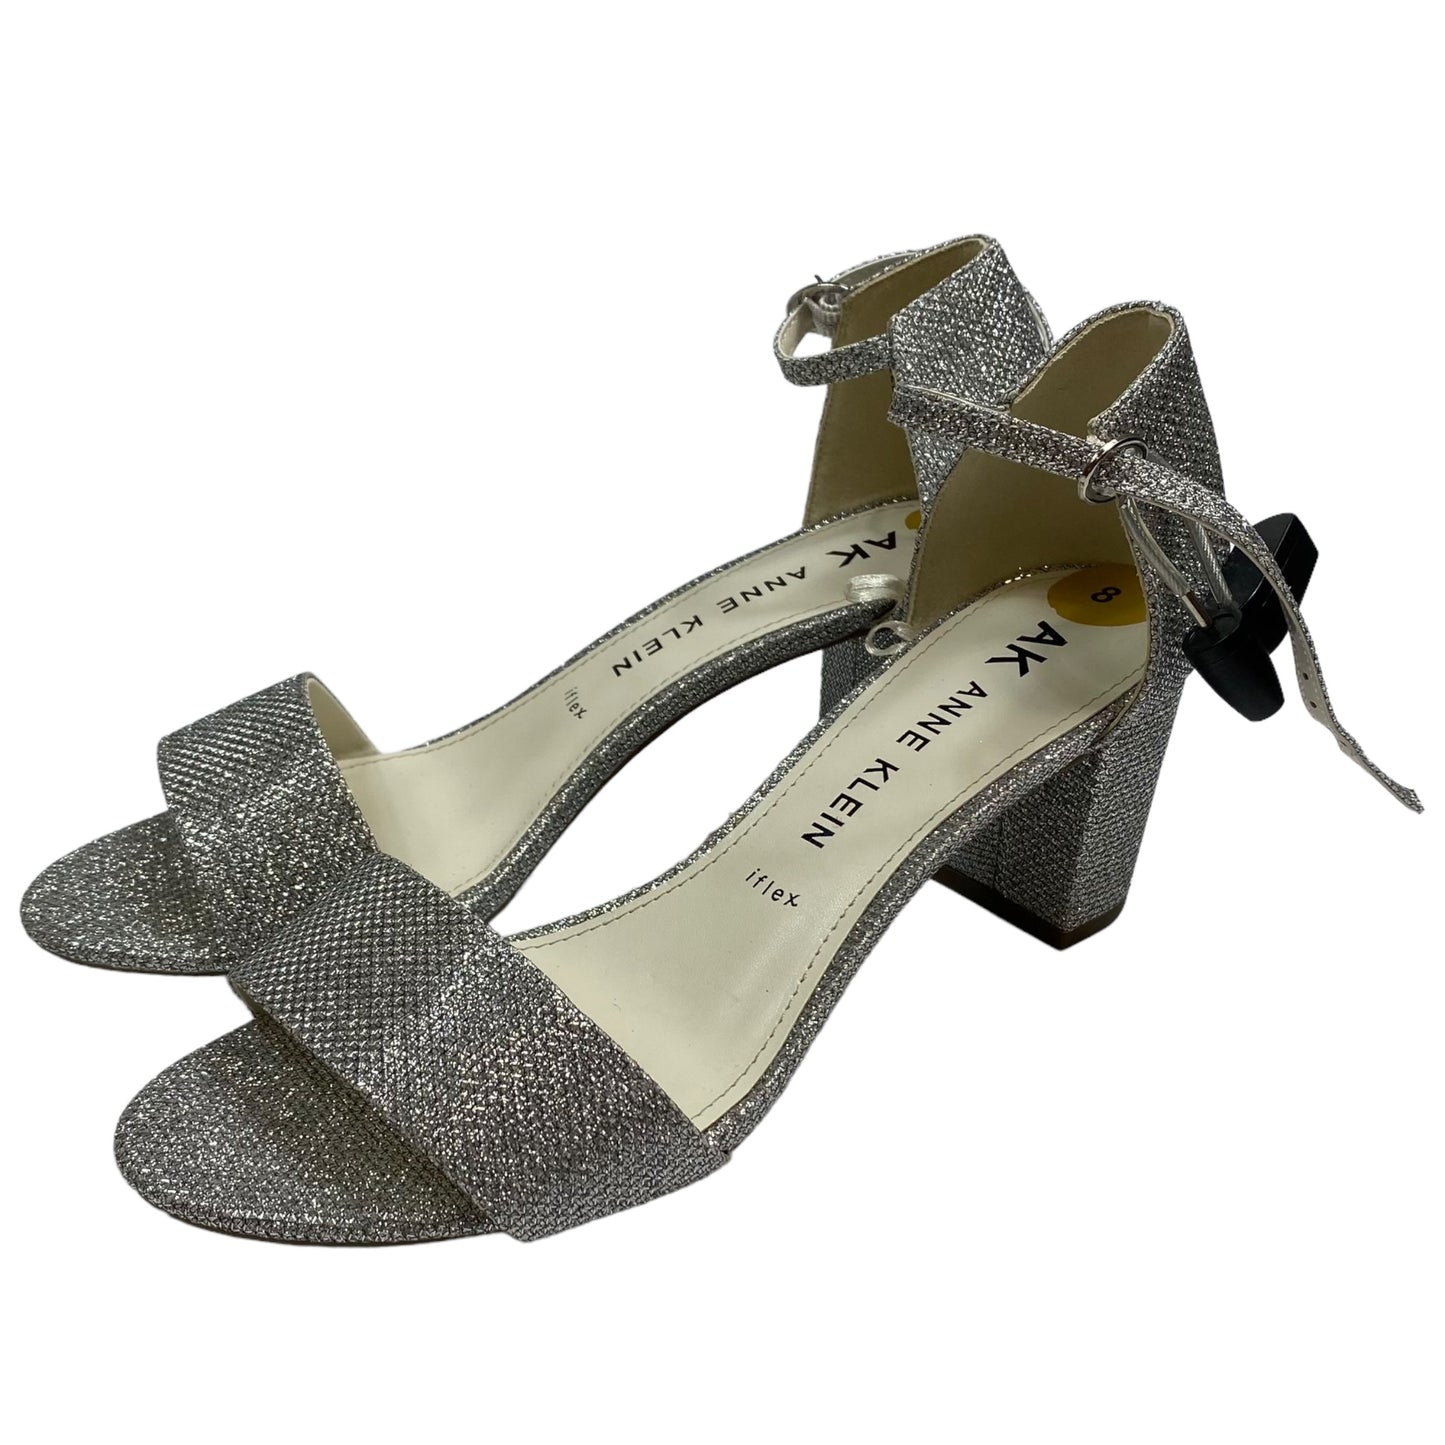 Sandals Heels Block By Anne Klein  Size: 8